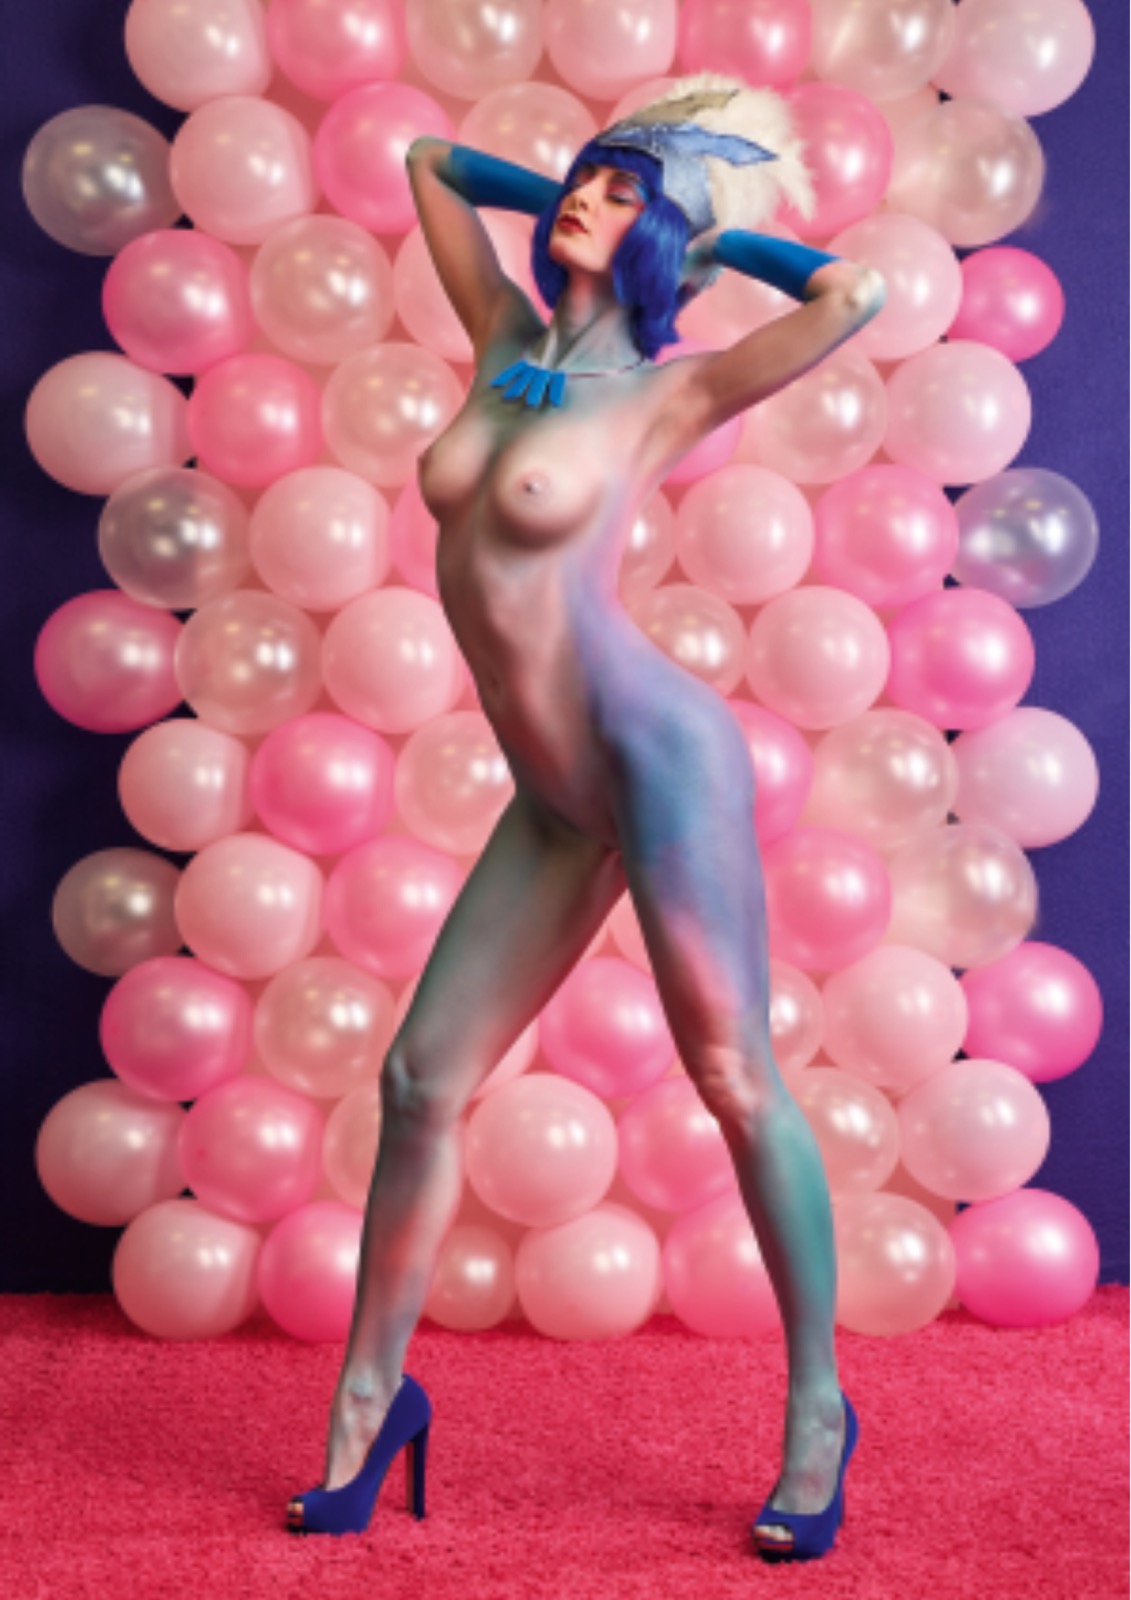 Aktfotografie im Studio vor Ballonhintergrund in Pink.